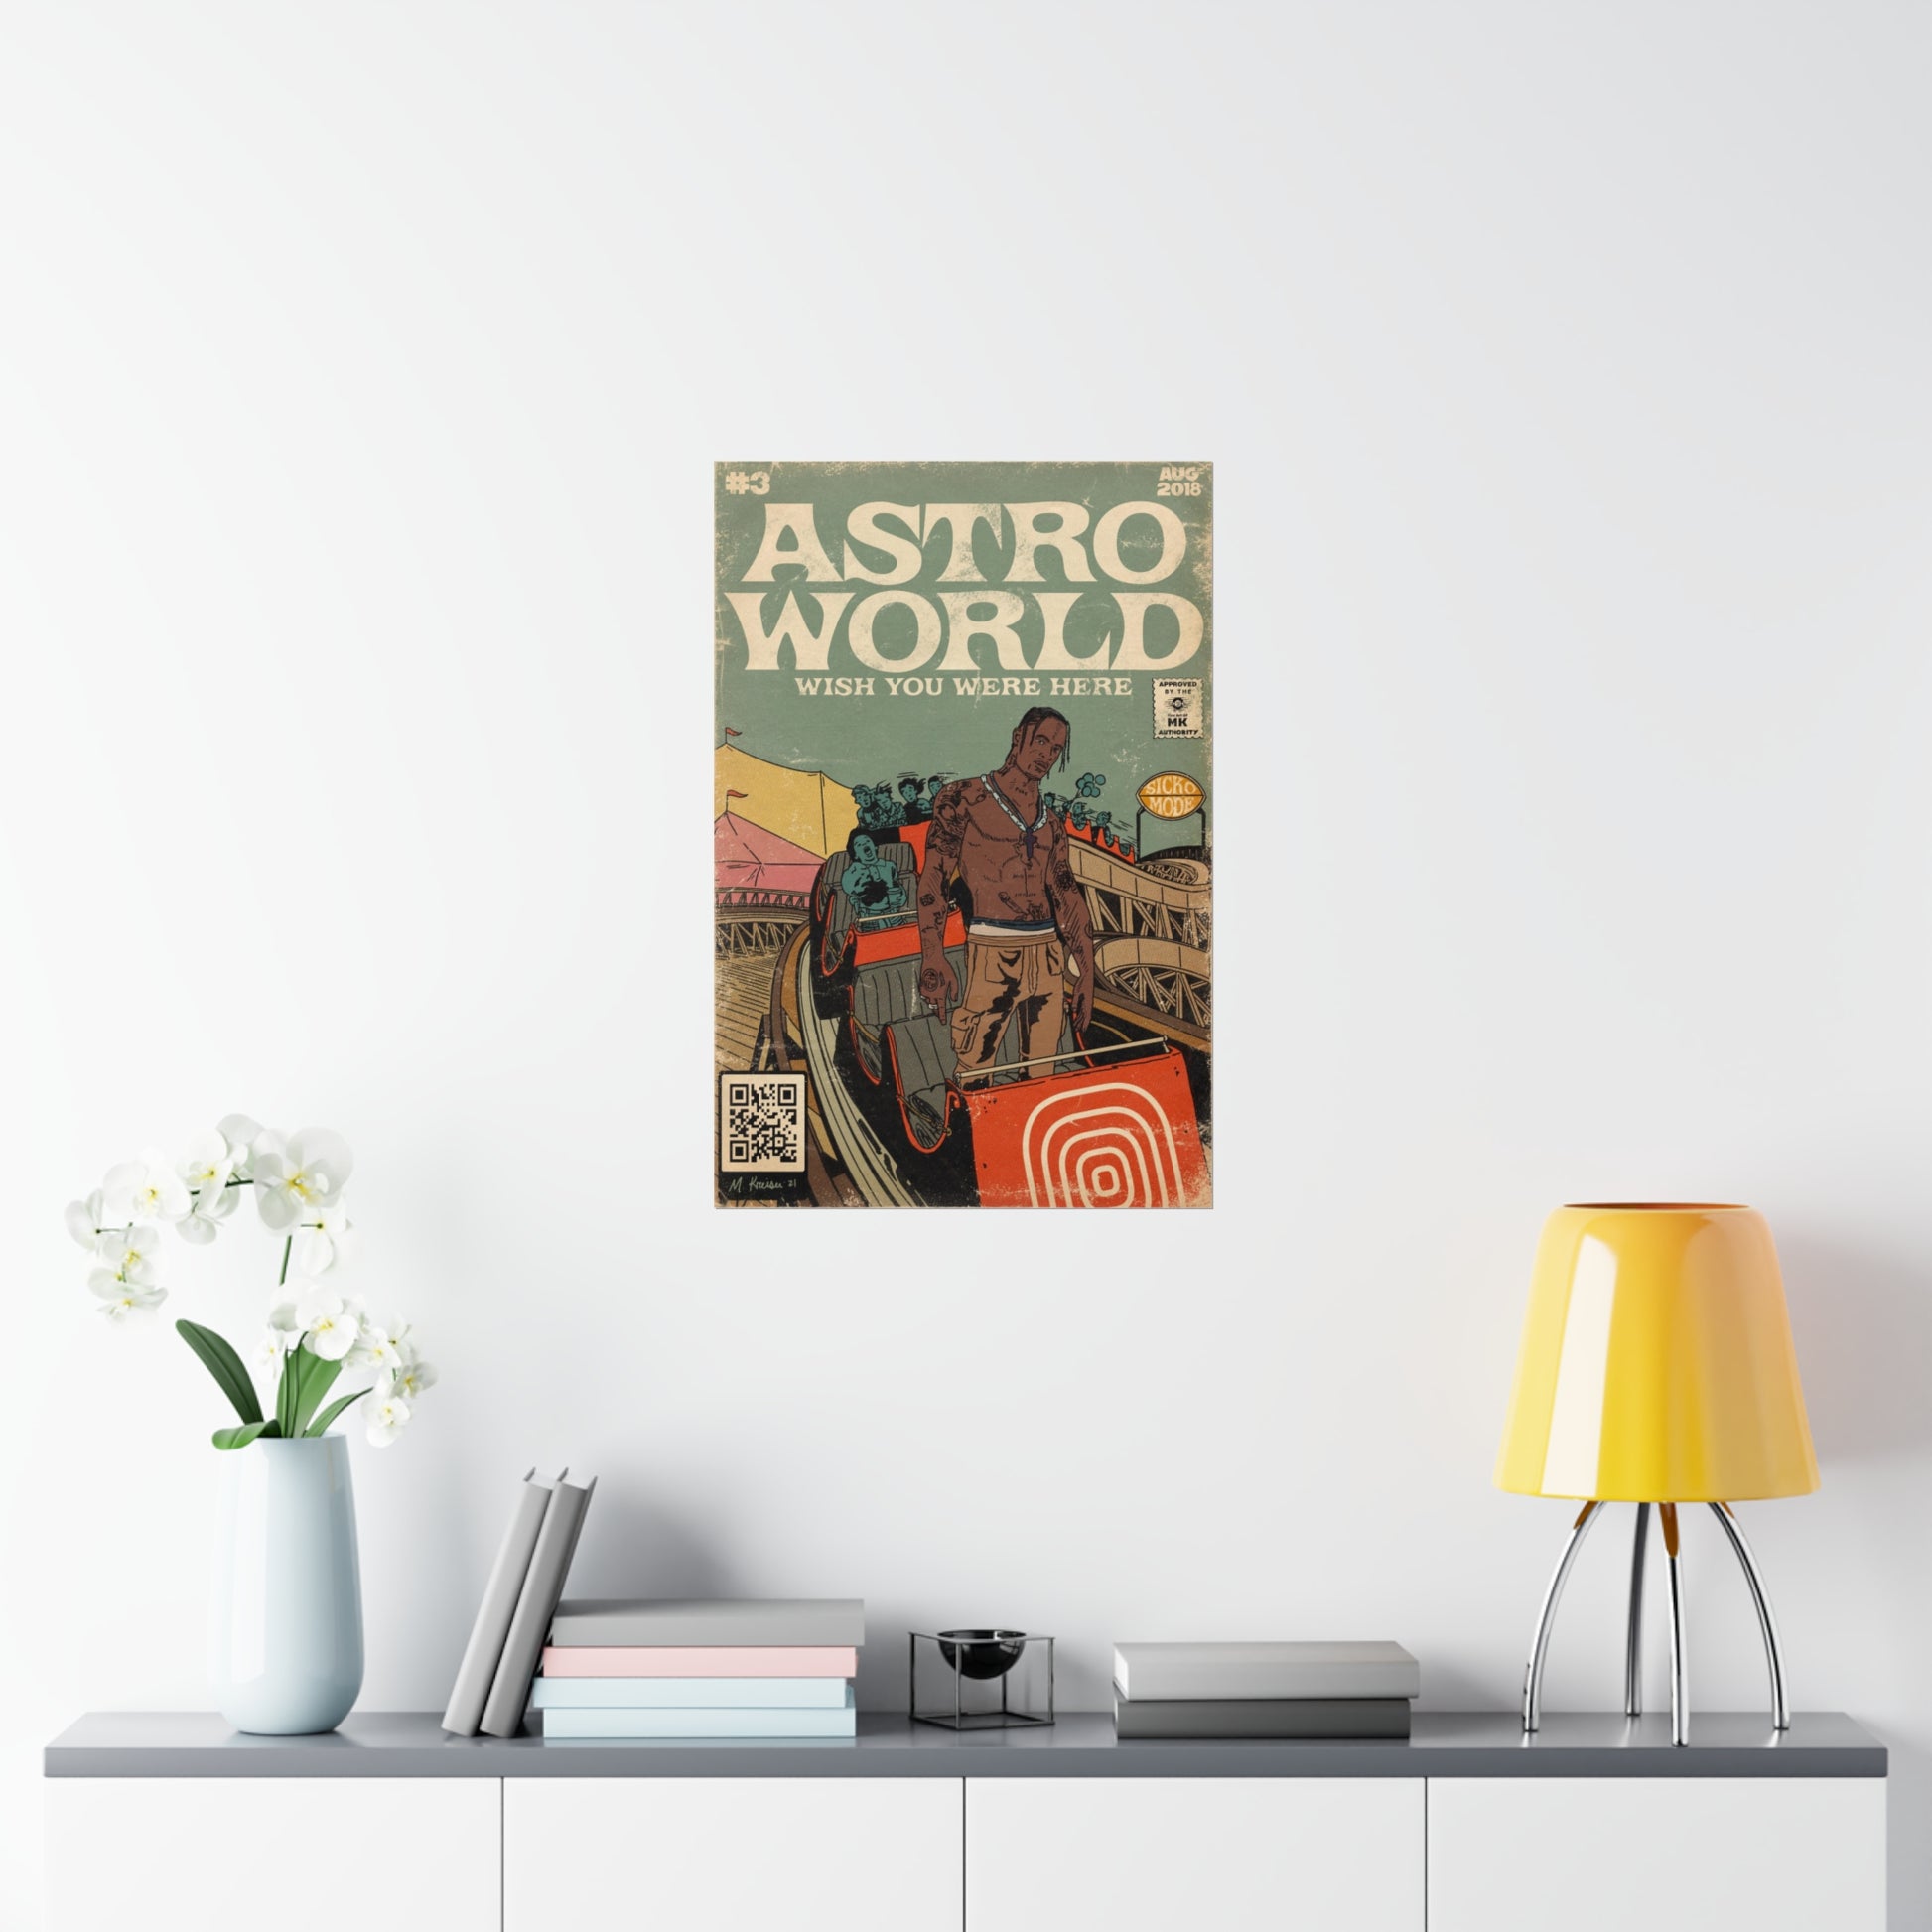 Travis Scott Astroworld poster minimalist poster vintage p - Inspire Uplift